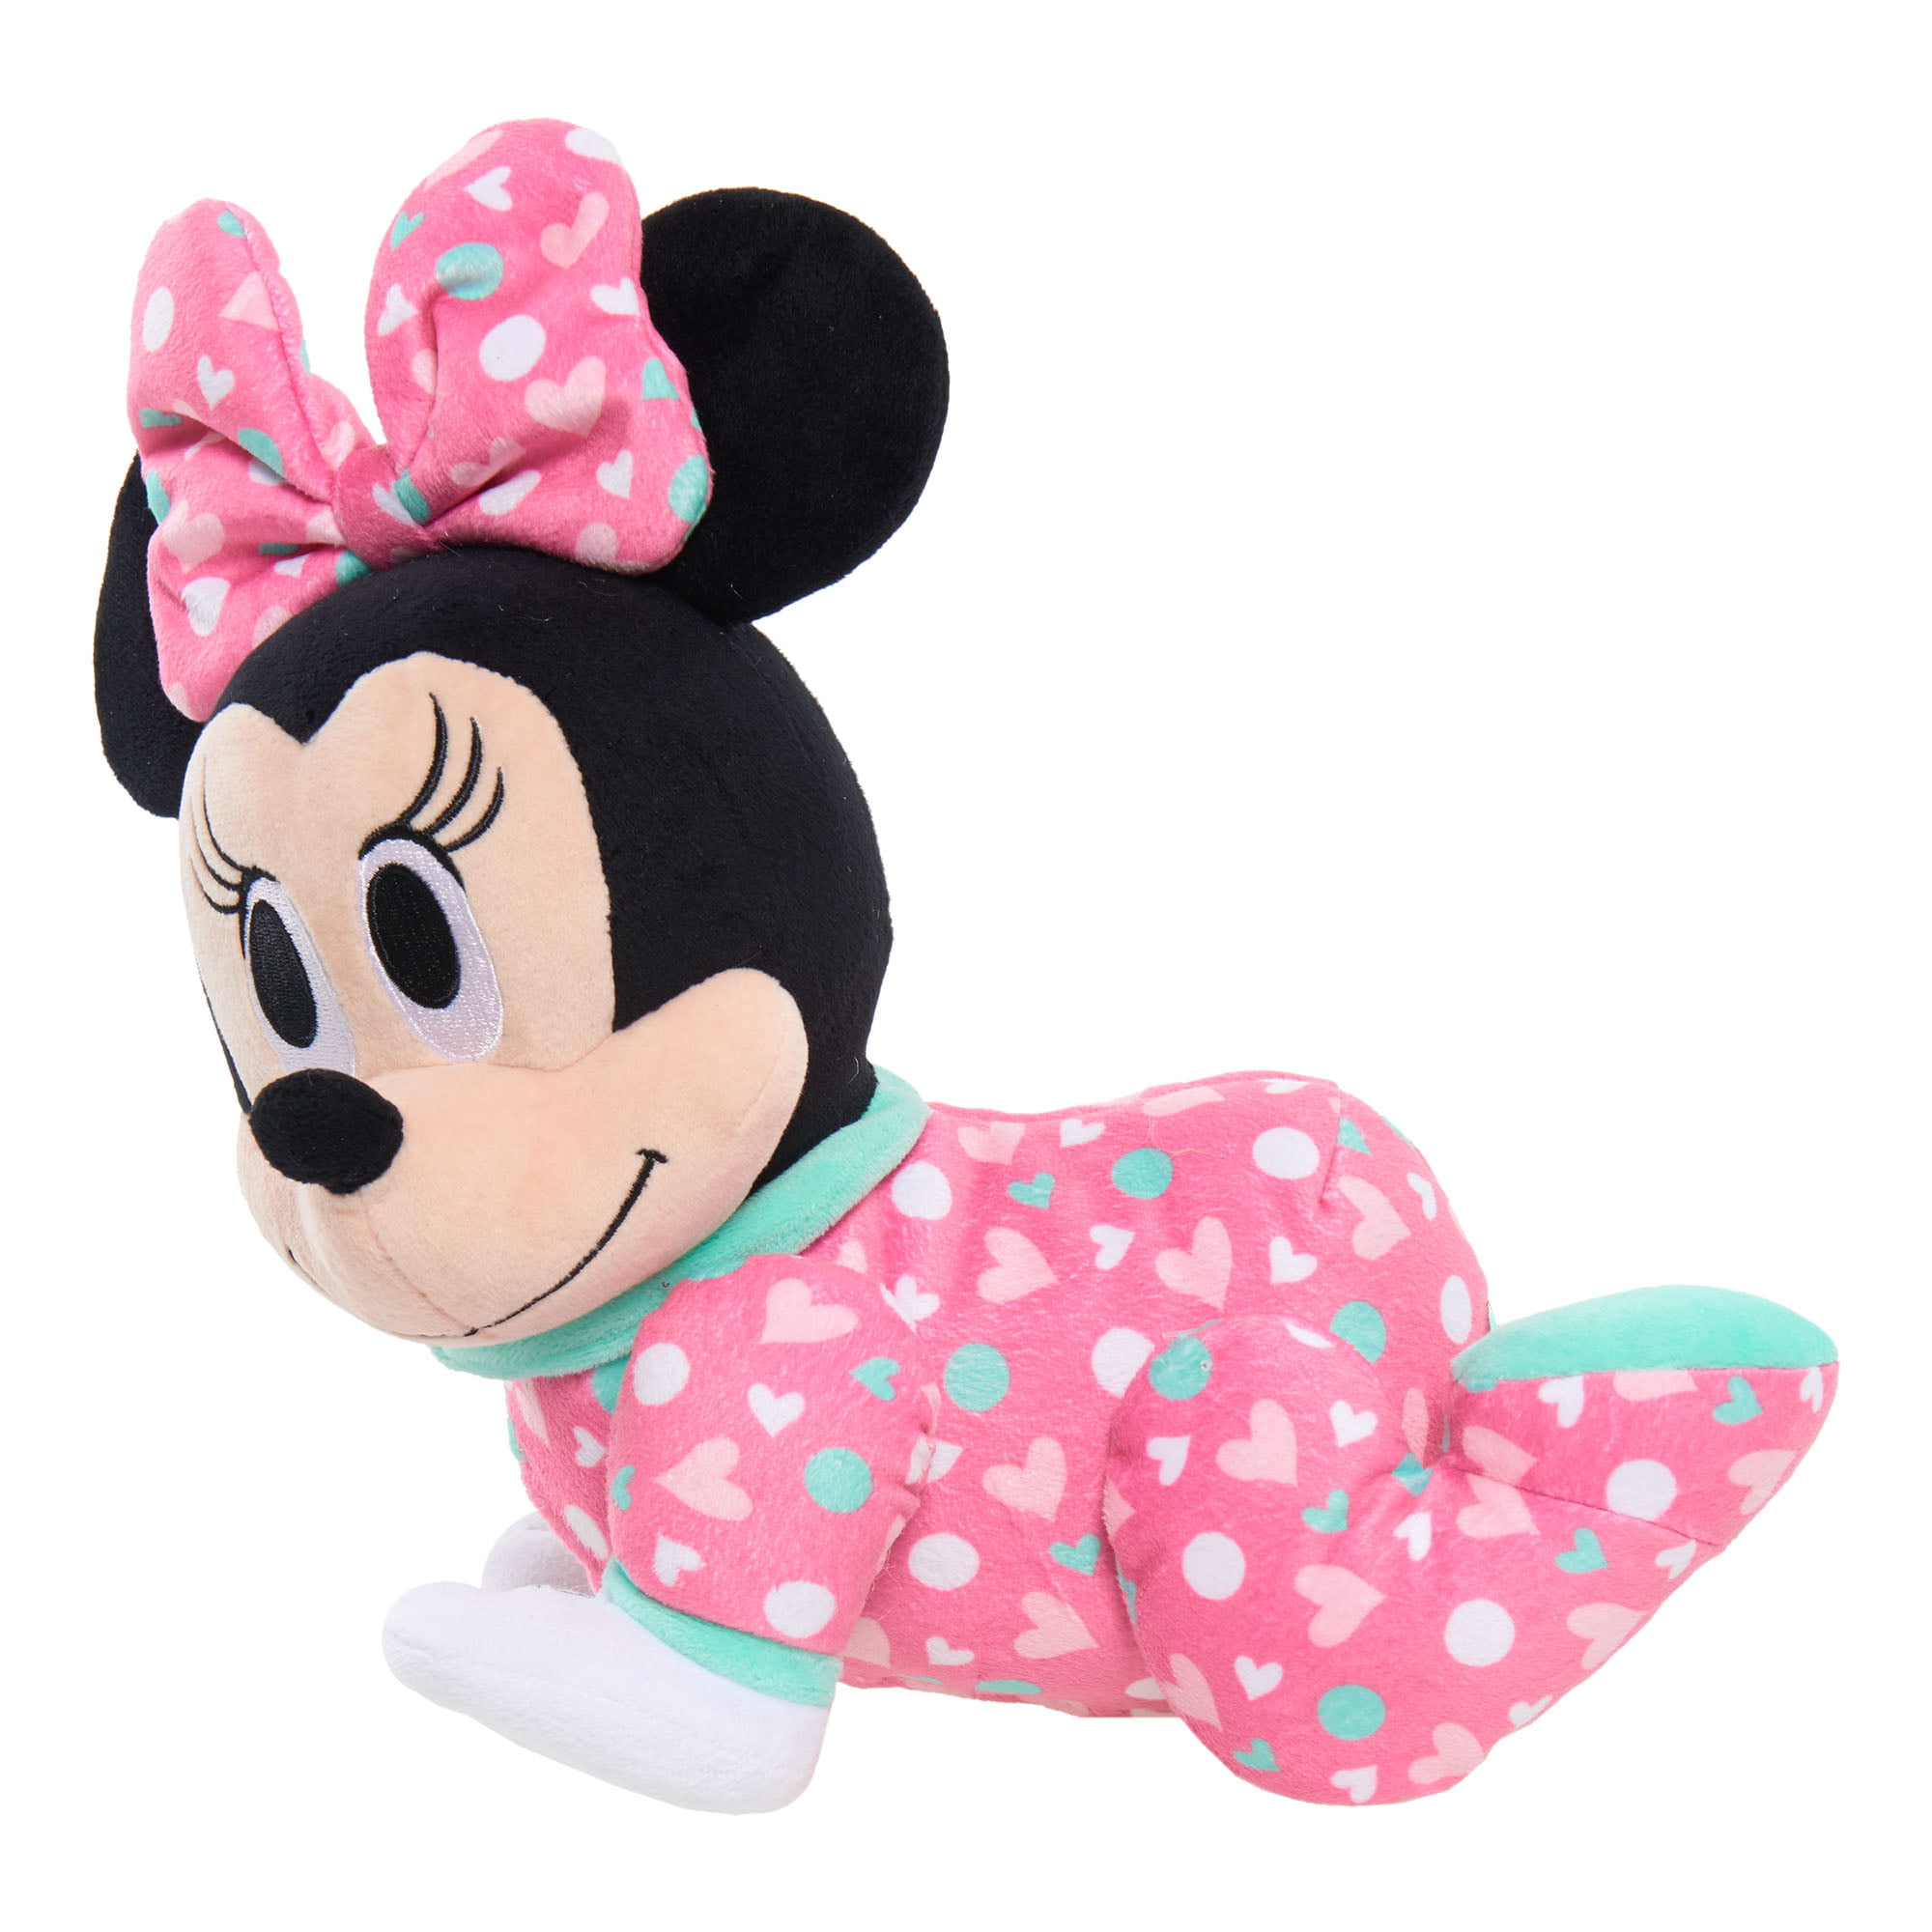 Disney Baby Musical Crawling Pals Plush Minnie Mouse Walmart Com Walmart Com